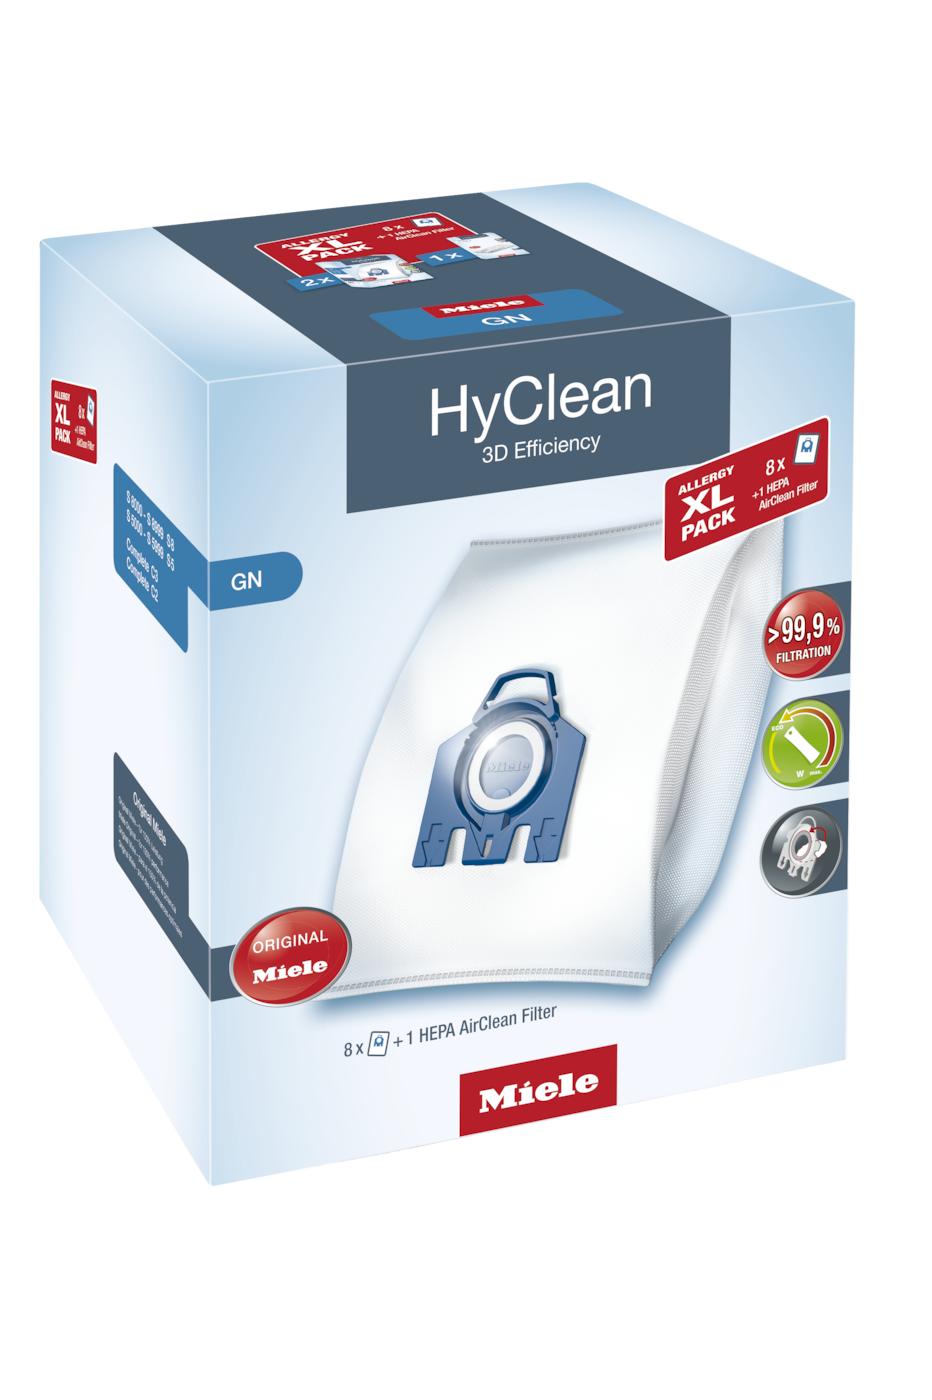 Allergy XL-Pack HyClean 3D Efficiency GNNyolc porzsák és egy HEPA AirClean szűrő kedvező áron